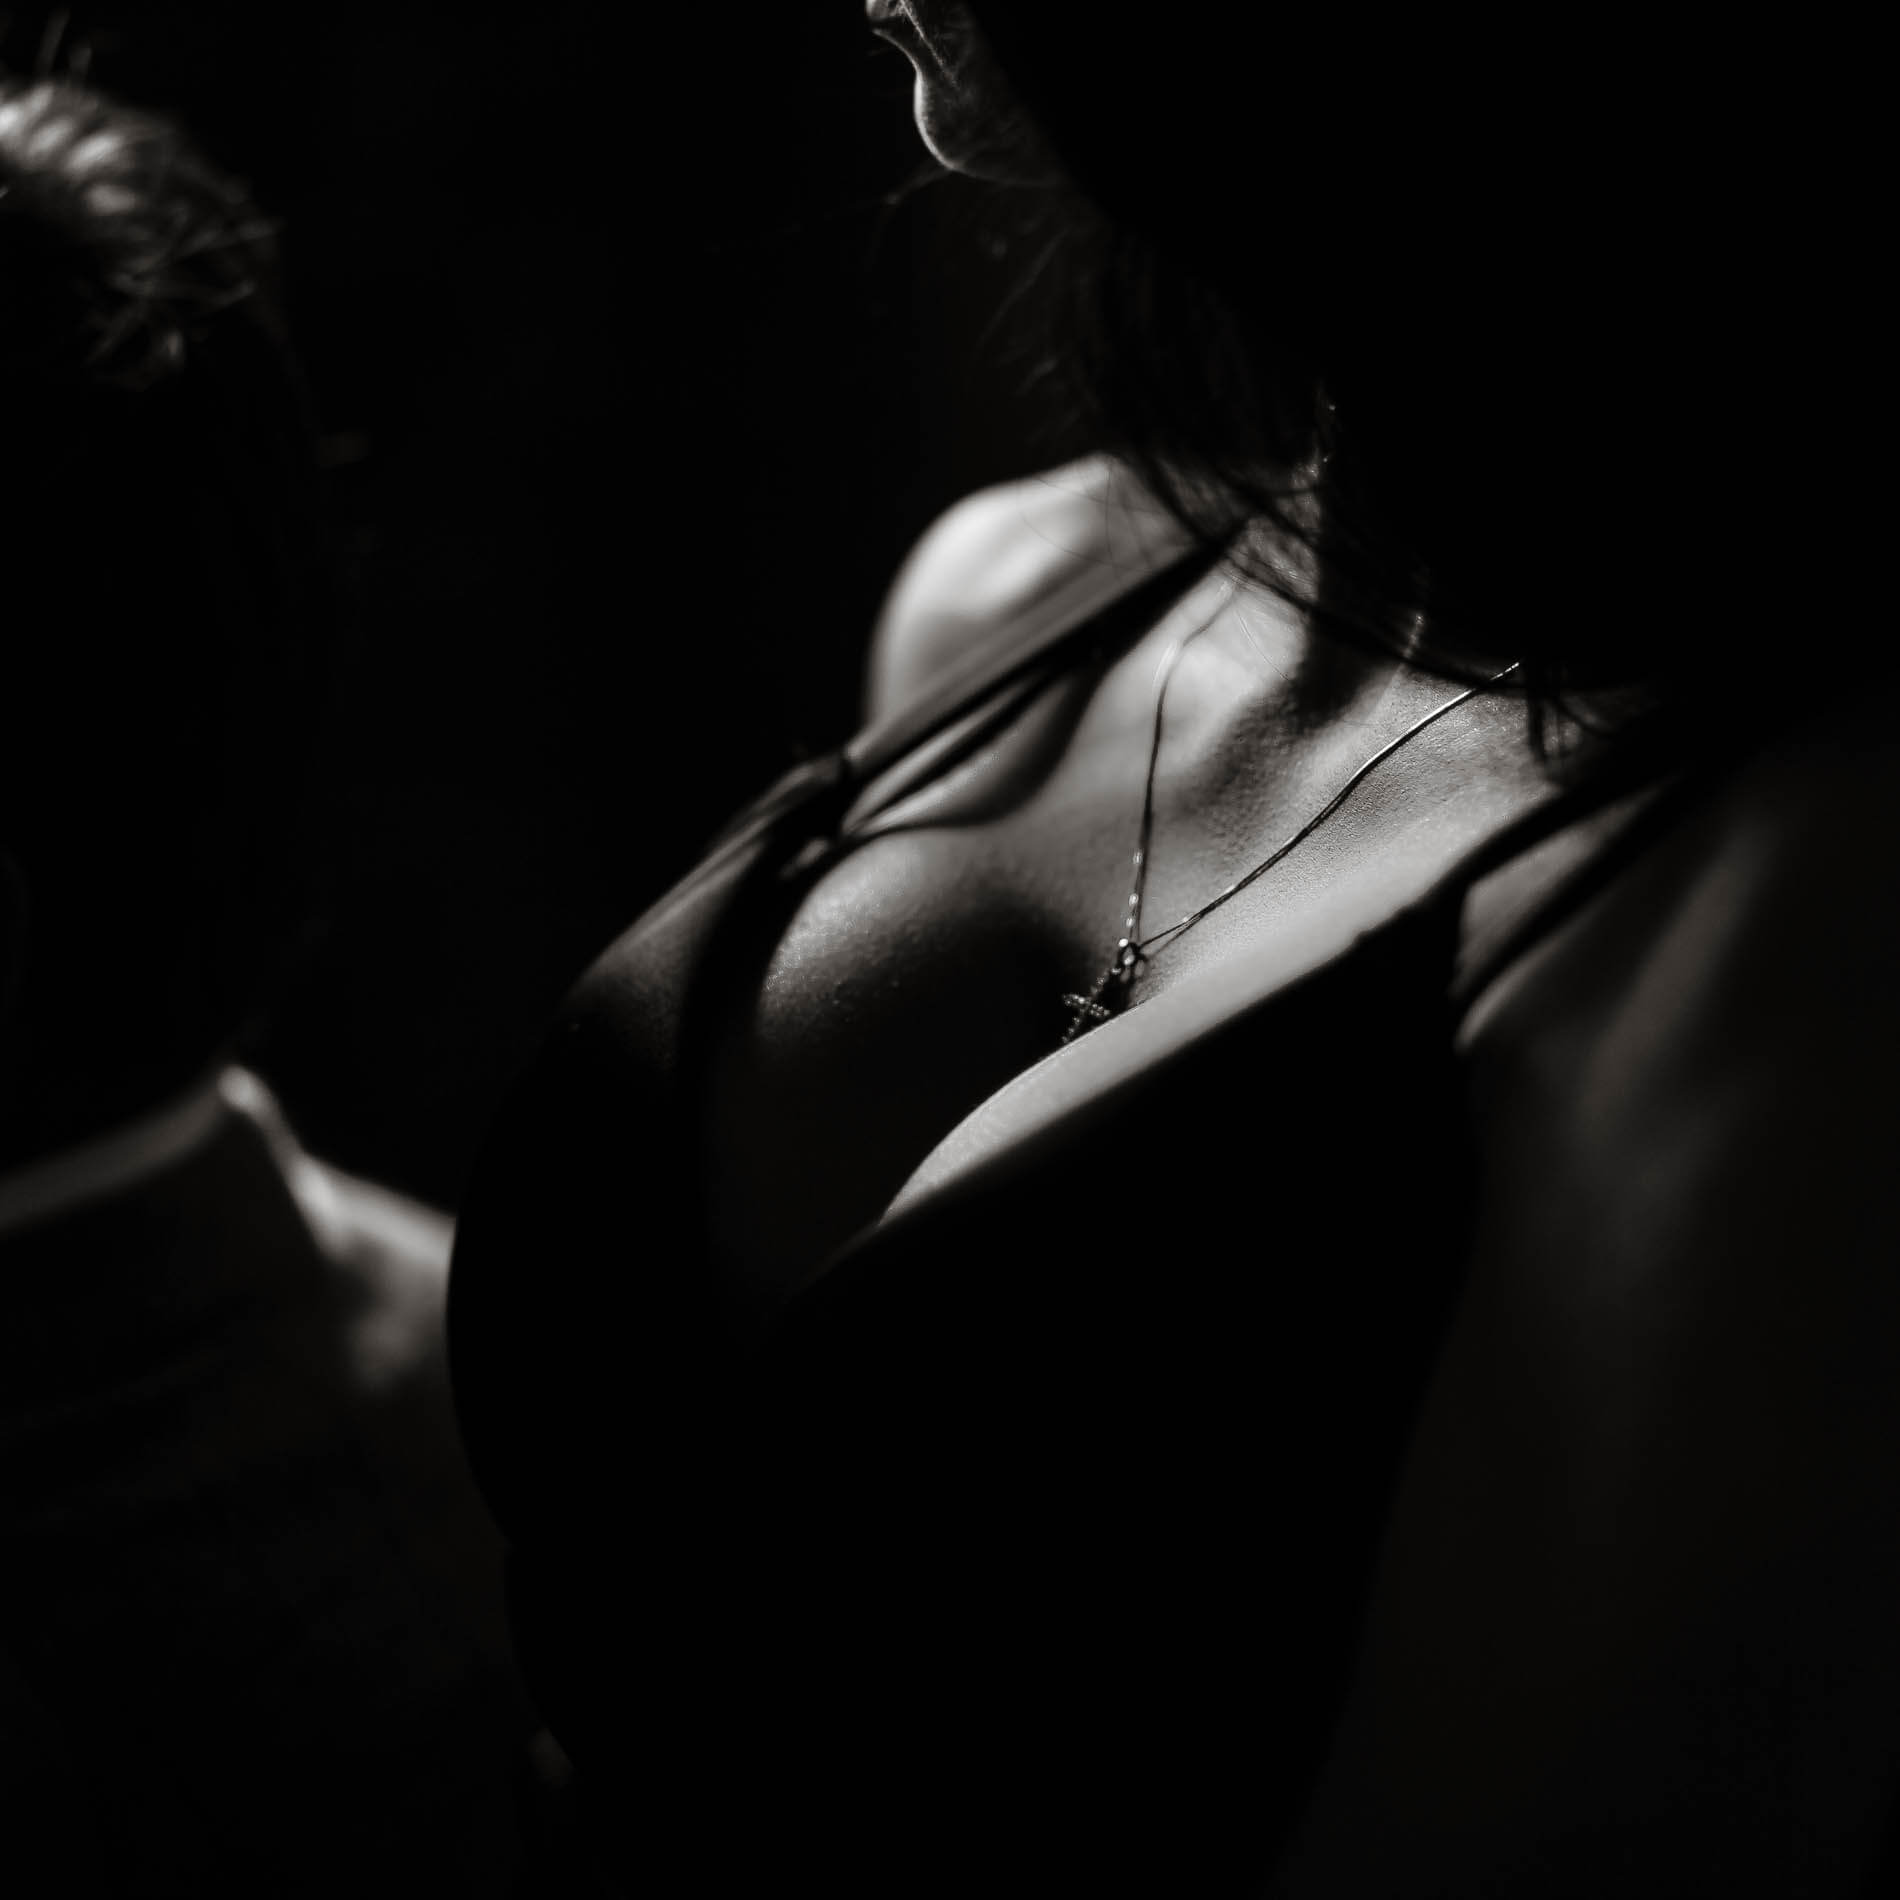 черно белые картинки женской груди фото 22